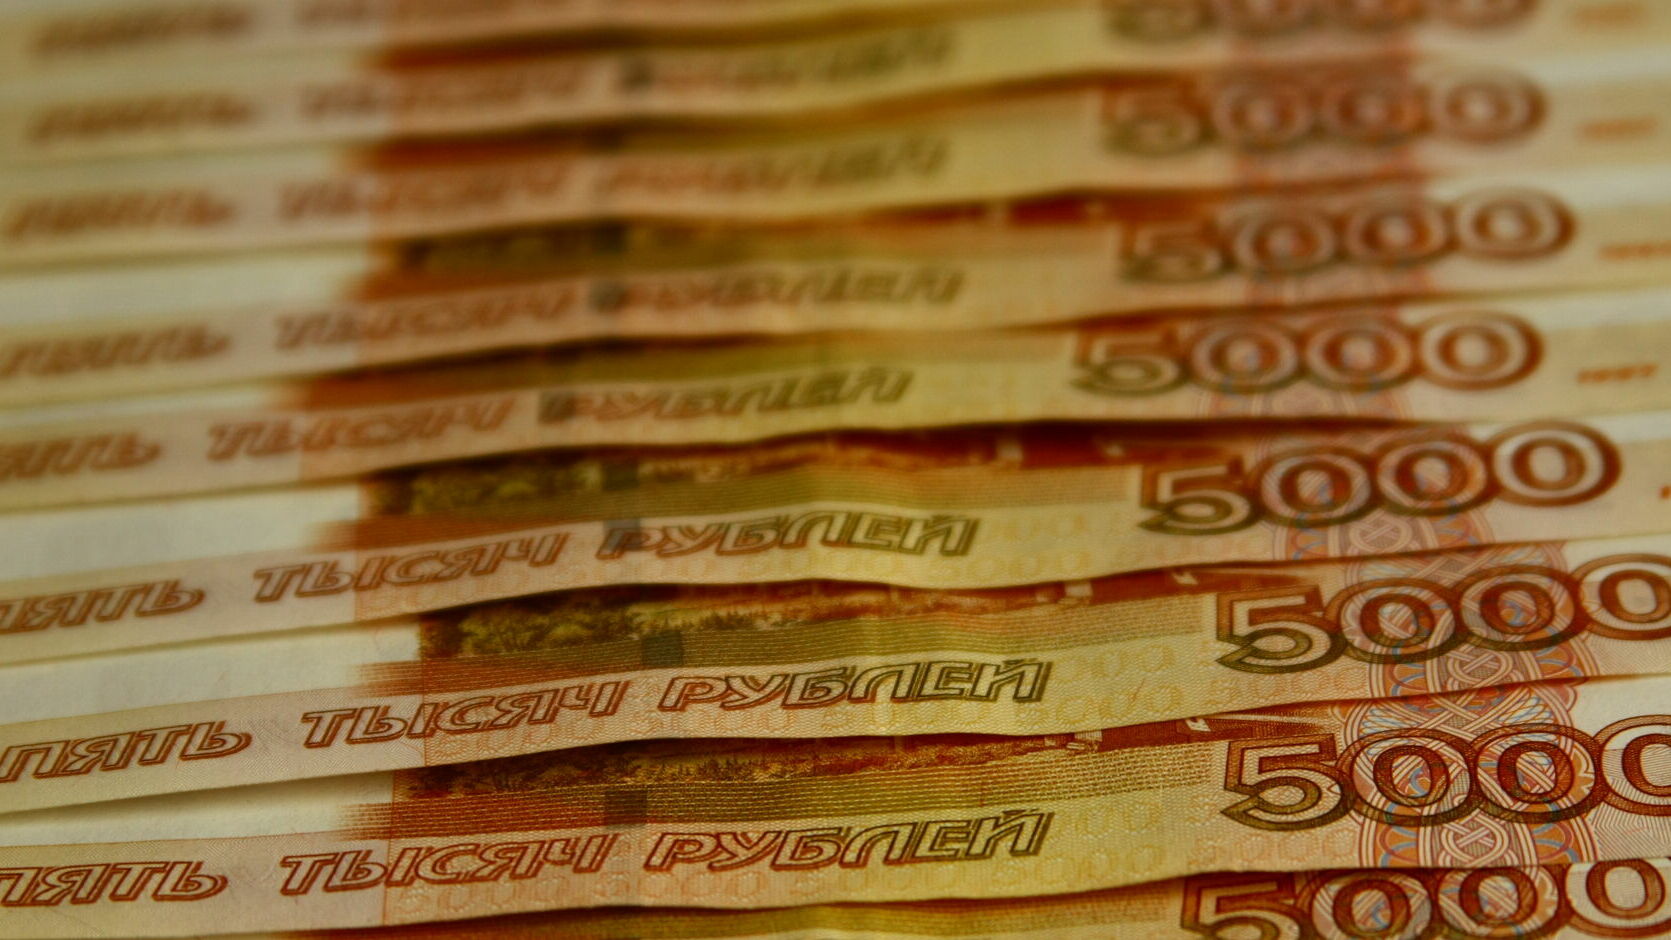 При использовании средств бюджета Перми выявлены нарушения на 4,4 миллиона рублей